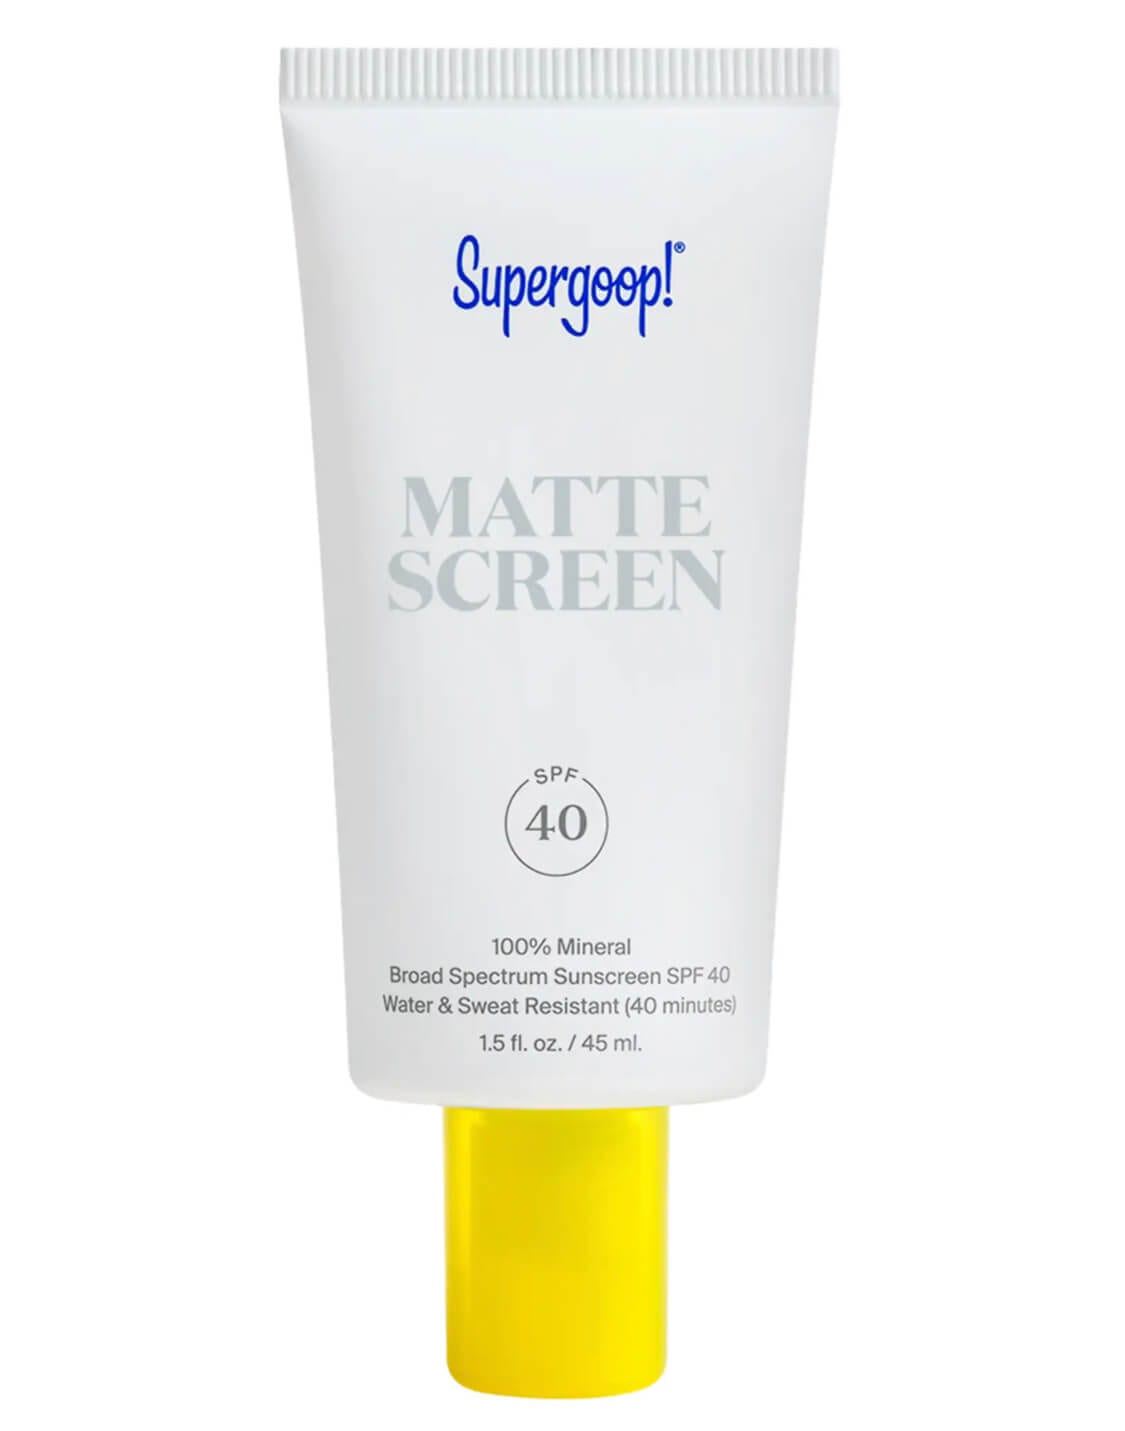 Mattescreen Sunscreen SPF 40 by Supergoop!